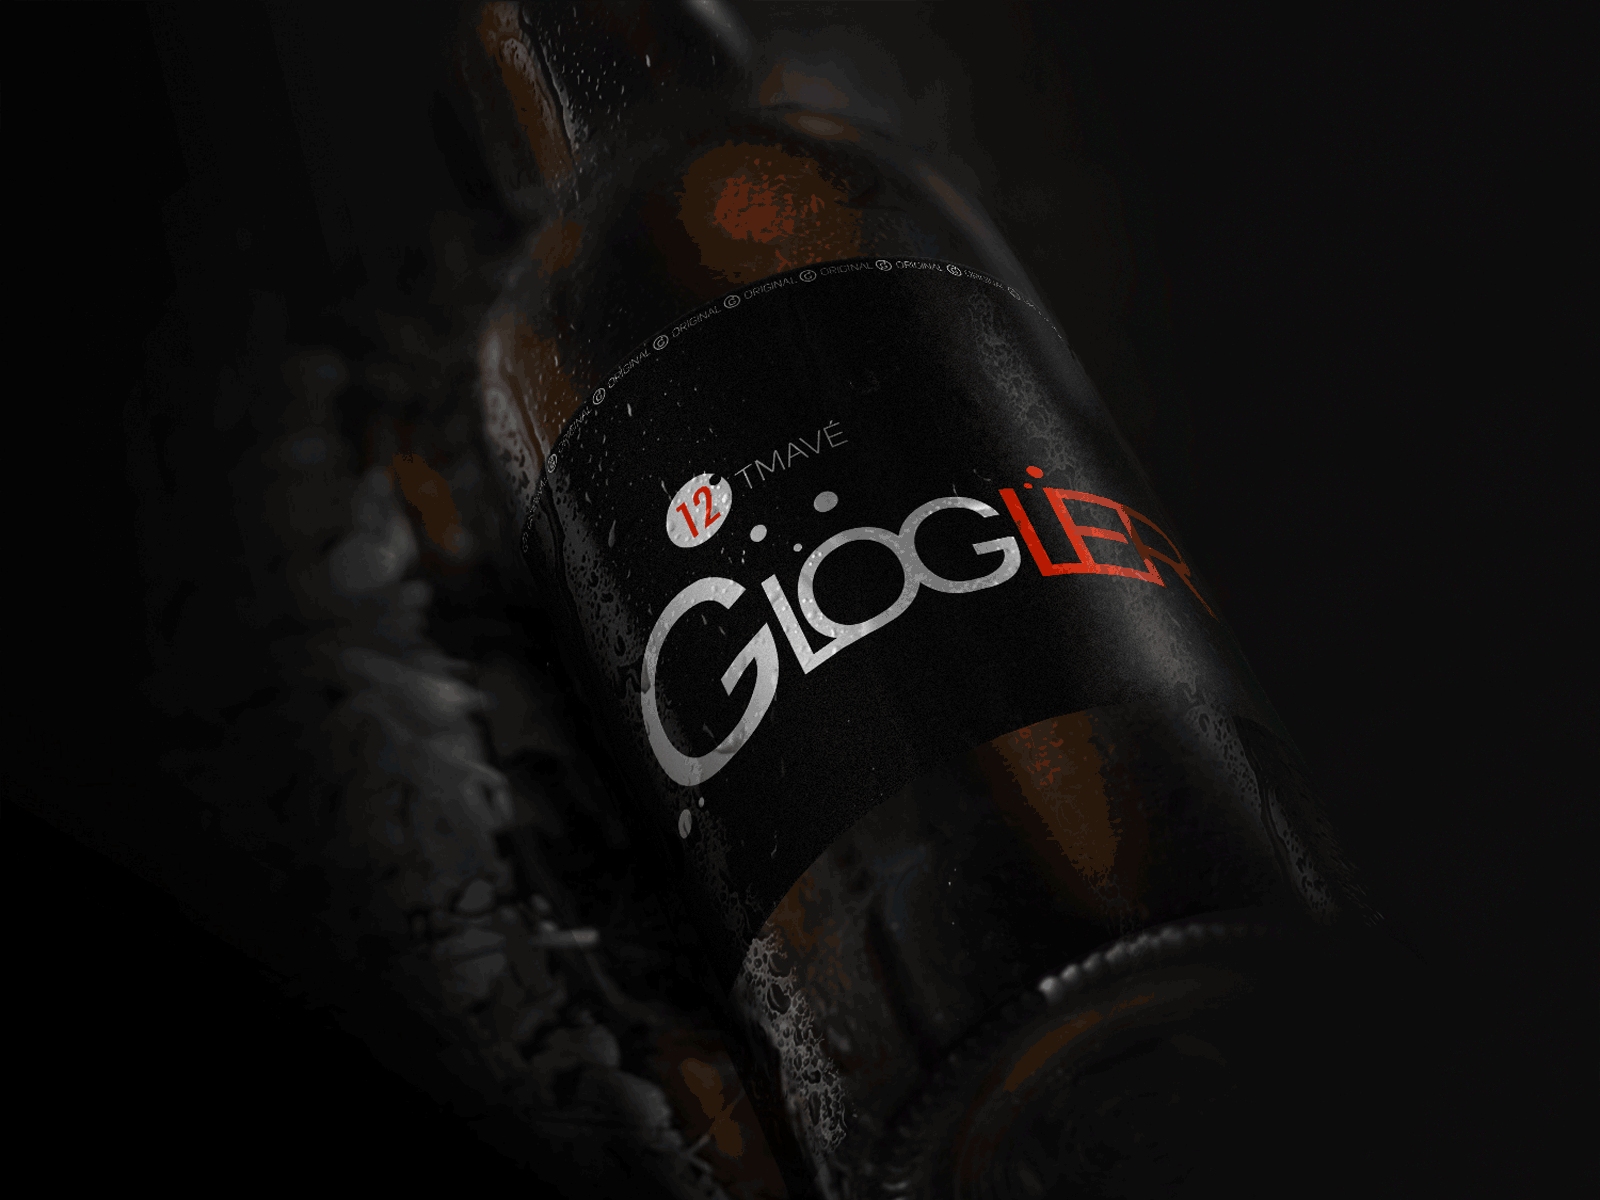 Glogler beer beer beer branding beer can brand branding branding design logo design logodesign product product design